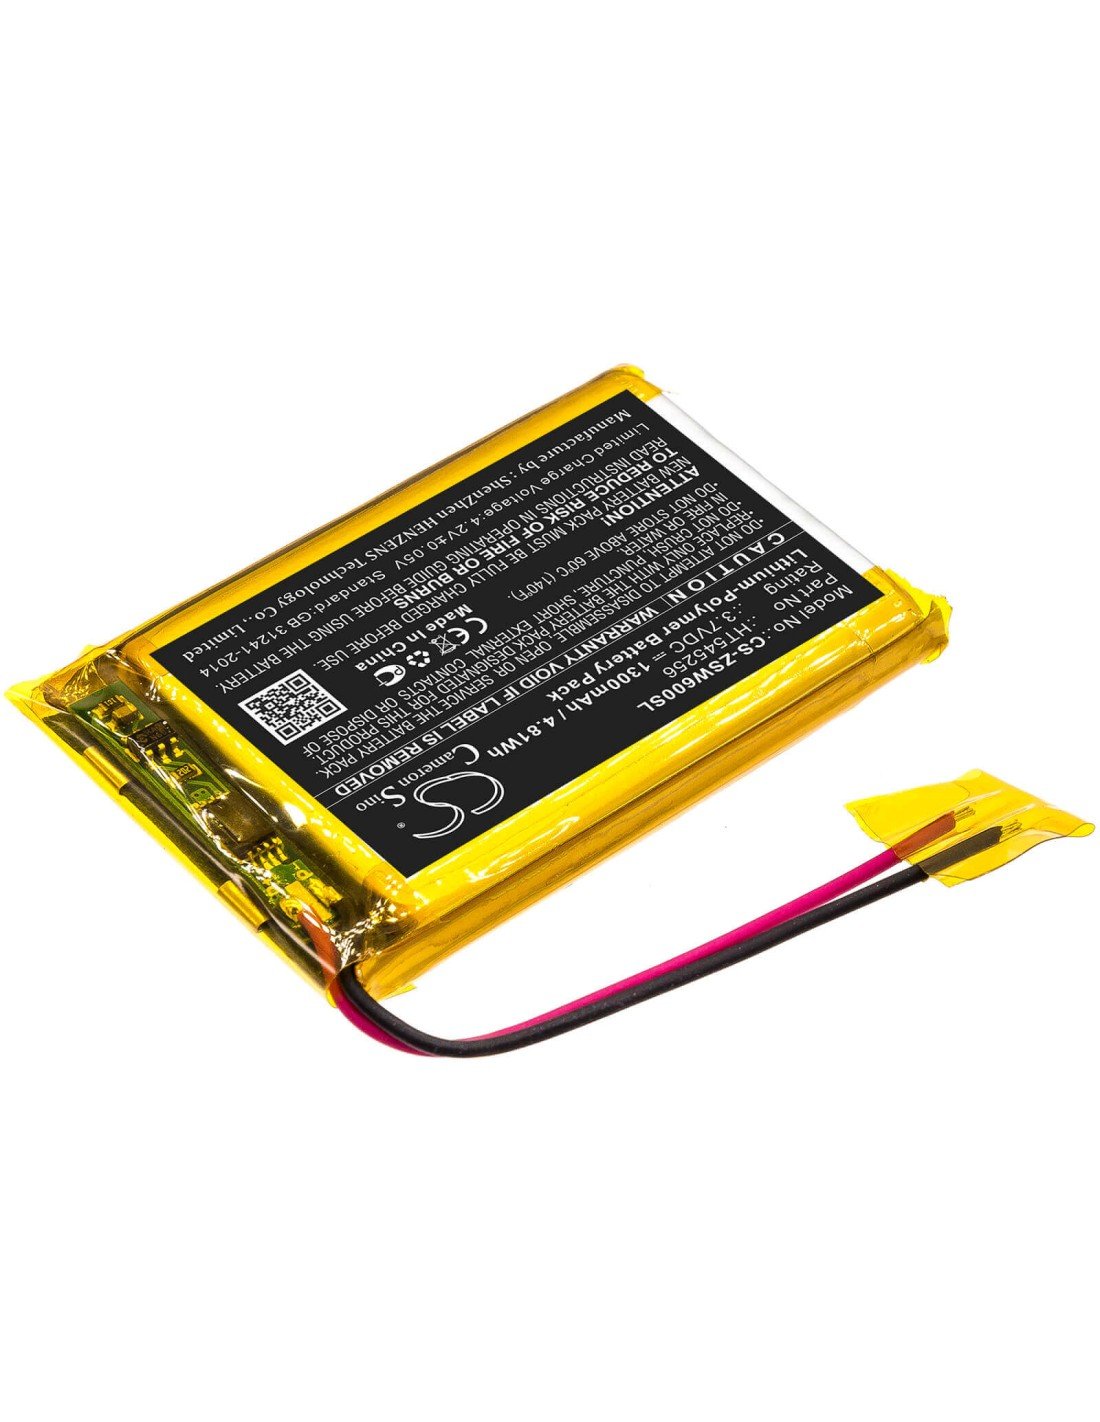 Battery for Izzo, Swami 6000 3.7V, 1300mAh - 4.81Wh